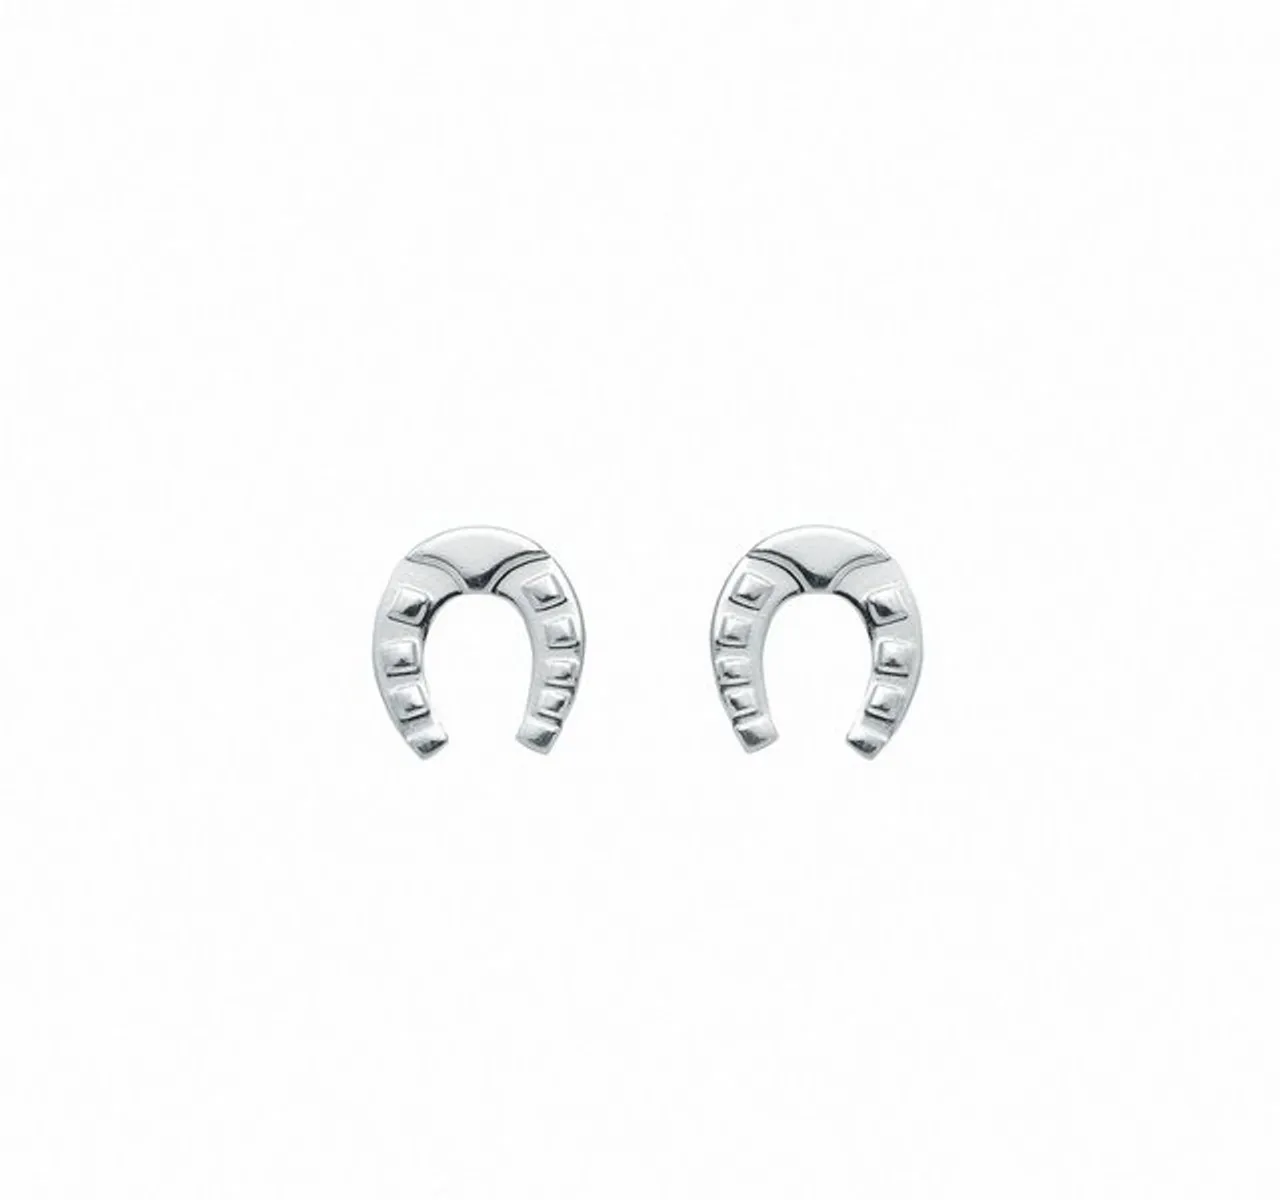 Adelia´s Paar Ohrhänger Damen Silberschmuck, 925 Sterling Silber Silberschmuck für Damen